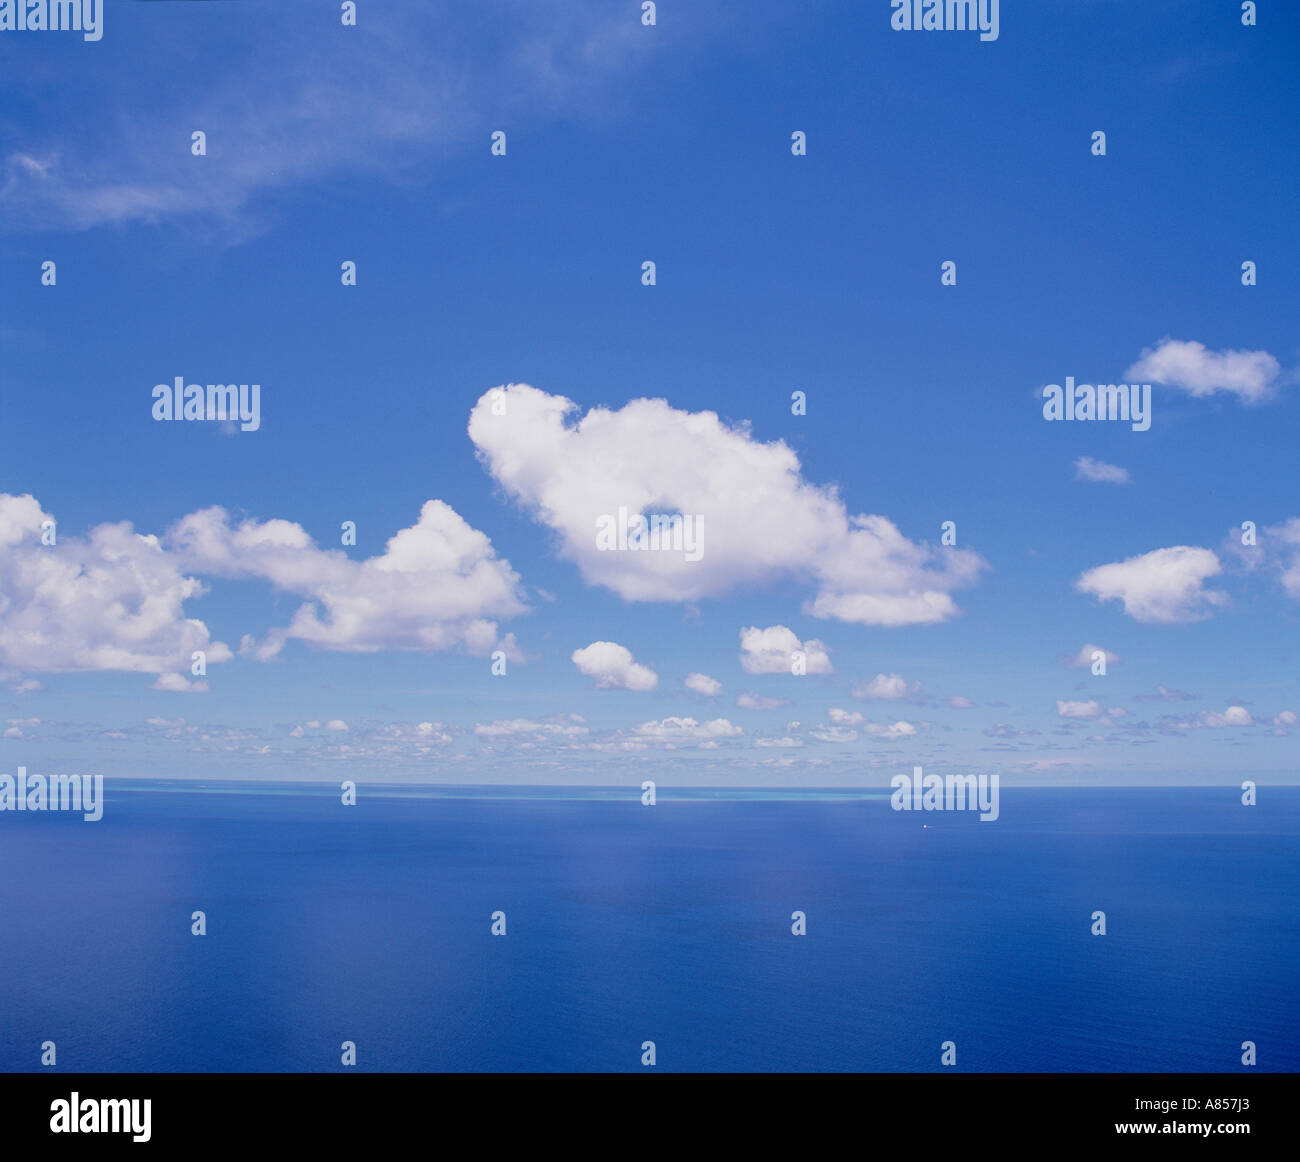 Australien. Queensland. Great Barrier Reef. Seelandschaft. Sonnigen blauen Himmel mit flauschigen weißen Wolken über Blauwasser Horizont Stockfoto